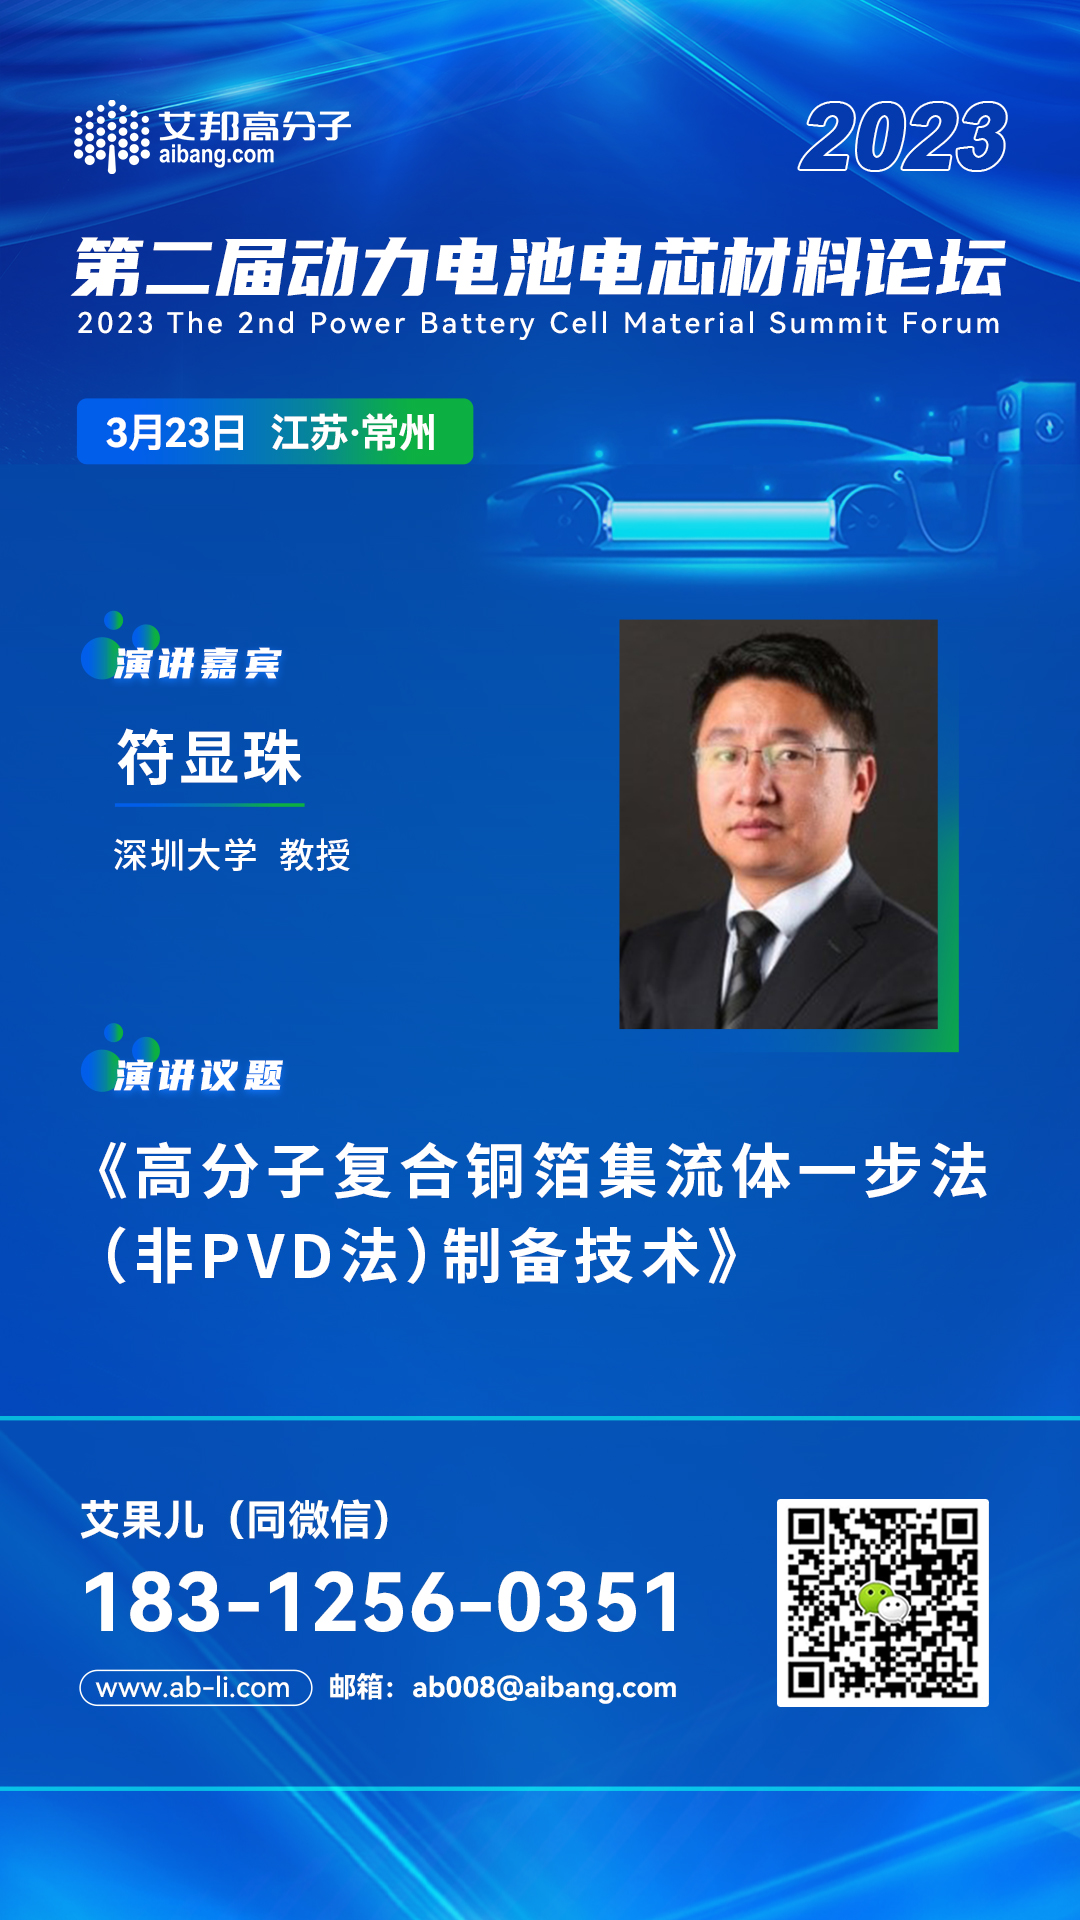 深圳大学符显珠教授将出席“2023年第二届动力电池电芯材料论坛”并做主题演讲